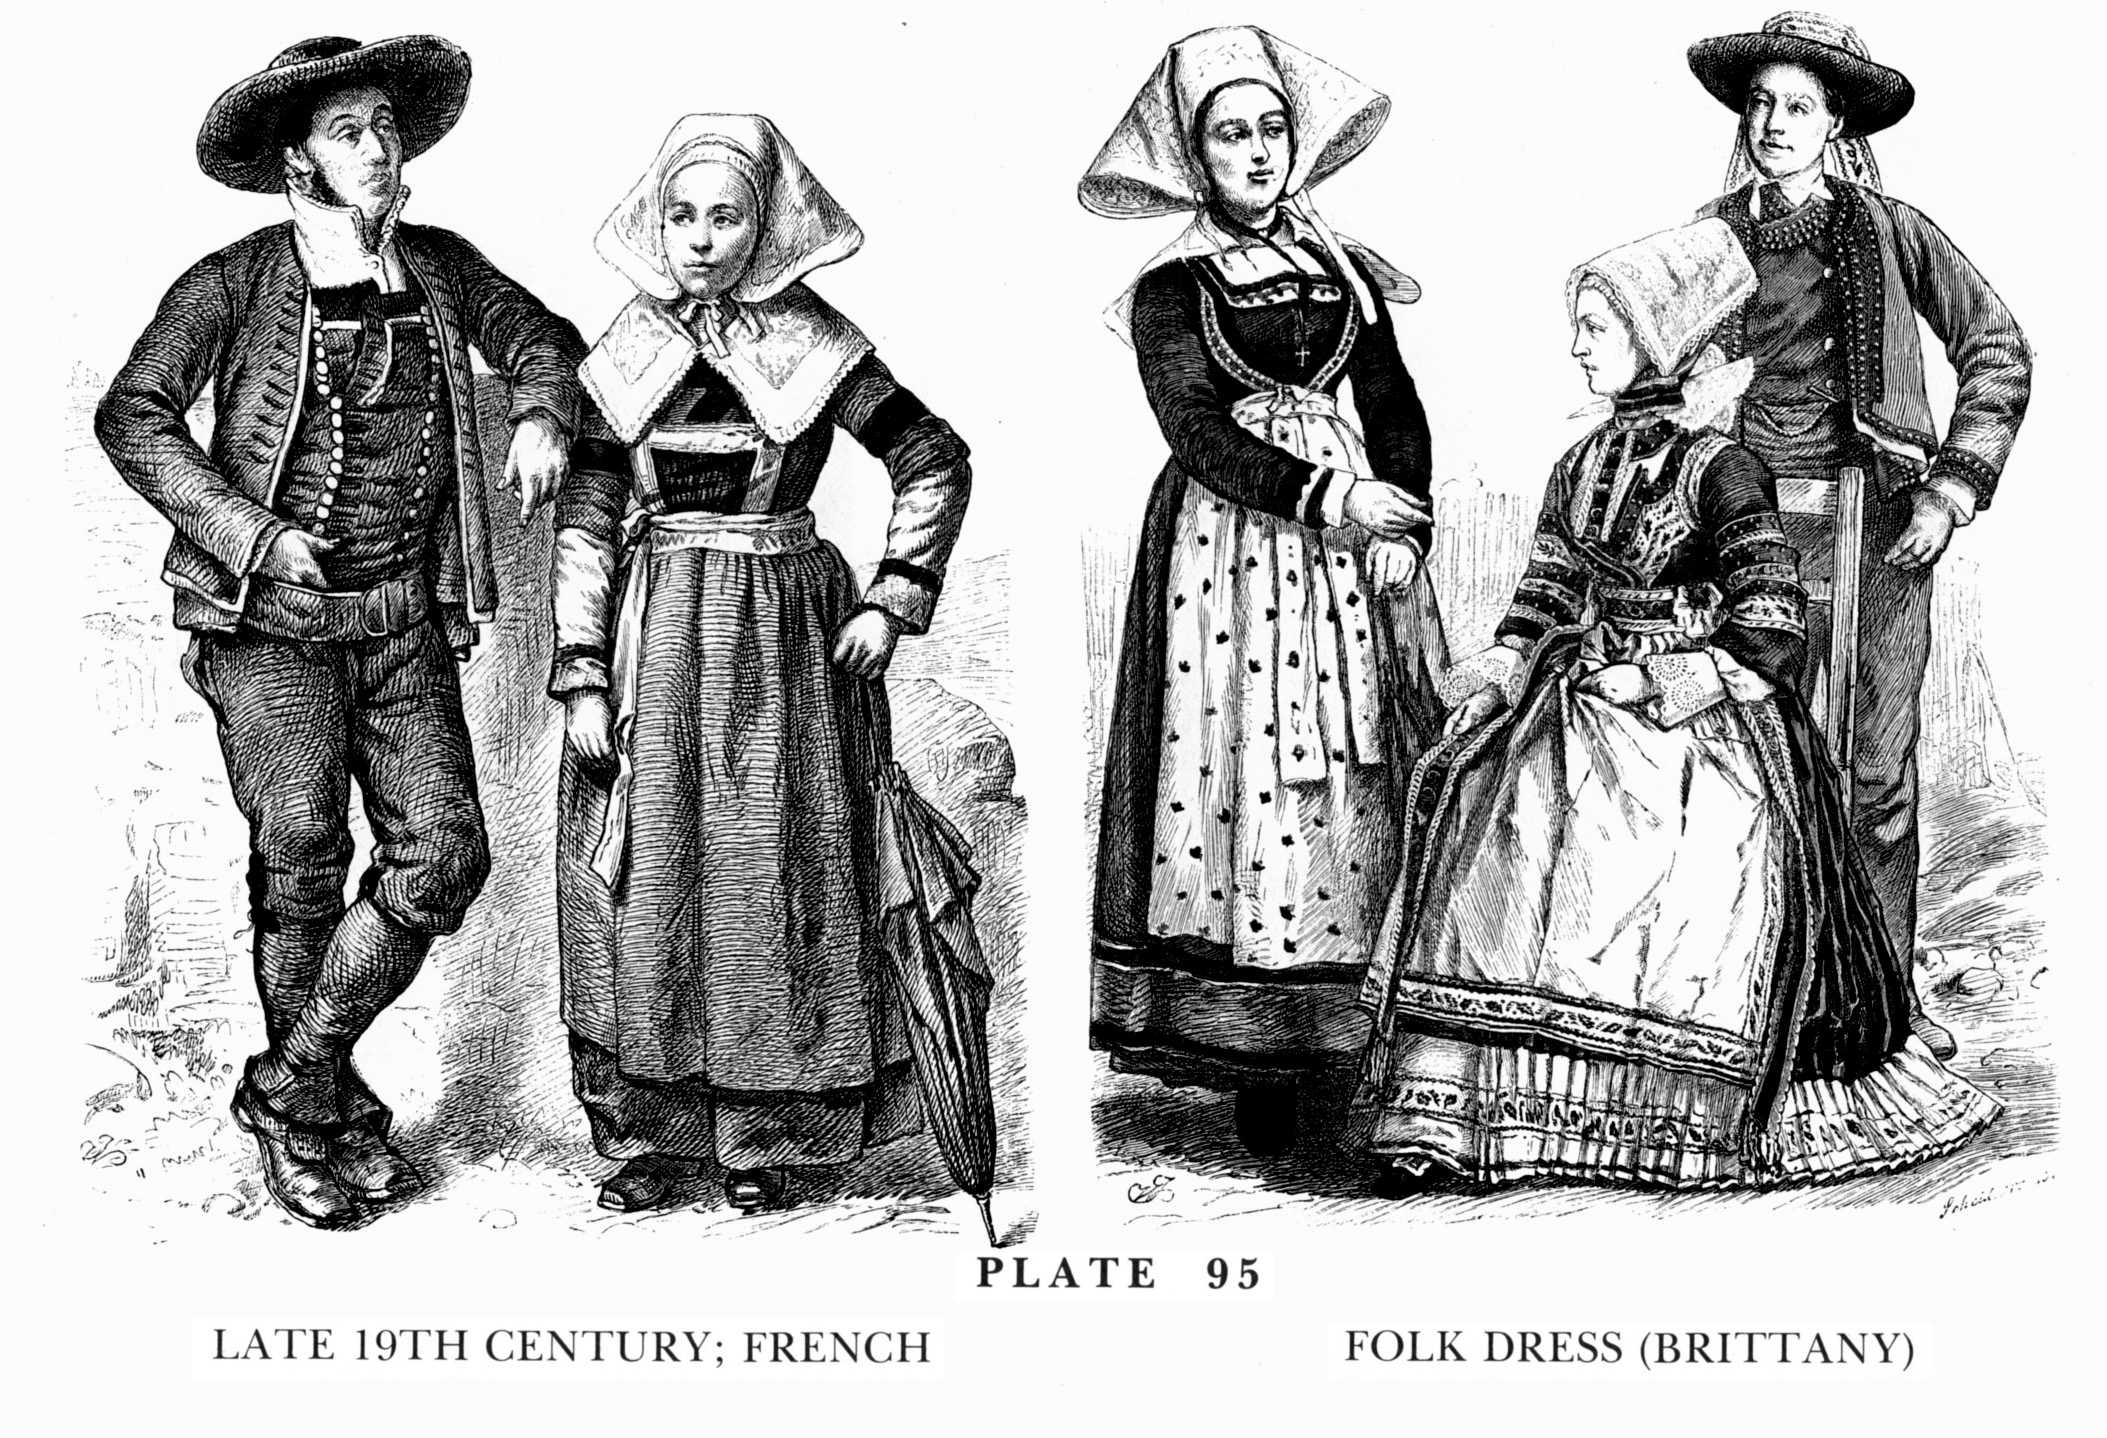 Одежда людей 17 века. Одежда простолюдинов 17 века в Англии. Костюм крестьянина Франции 17 века. Англия 17 век одежда простолюдин. Англия 16 век одежда простолюдин.